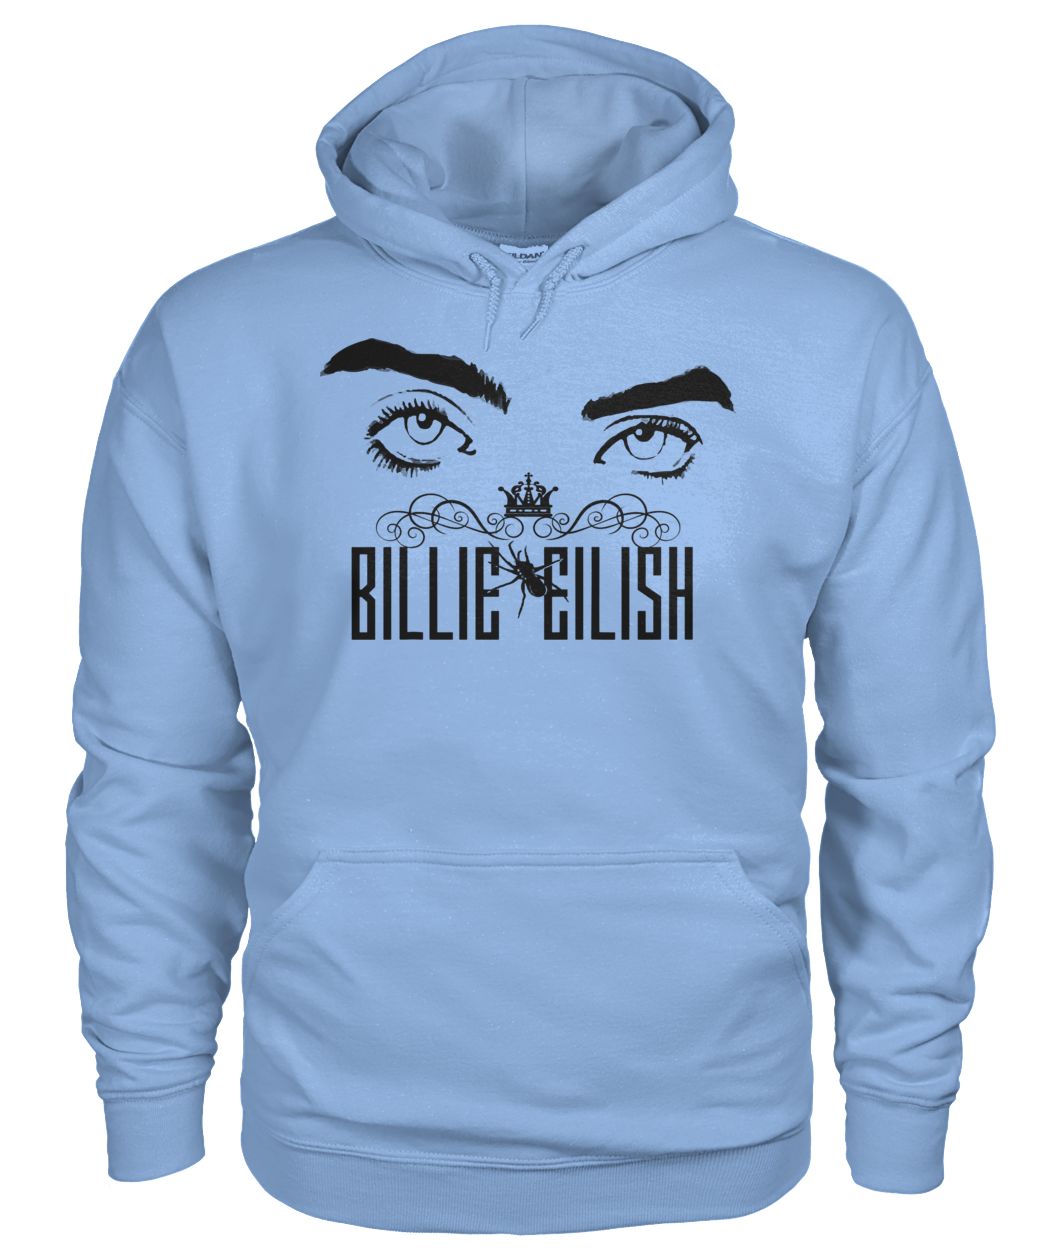 Billie eilish ocean eyes gildan hoodie